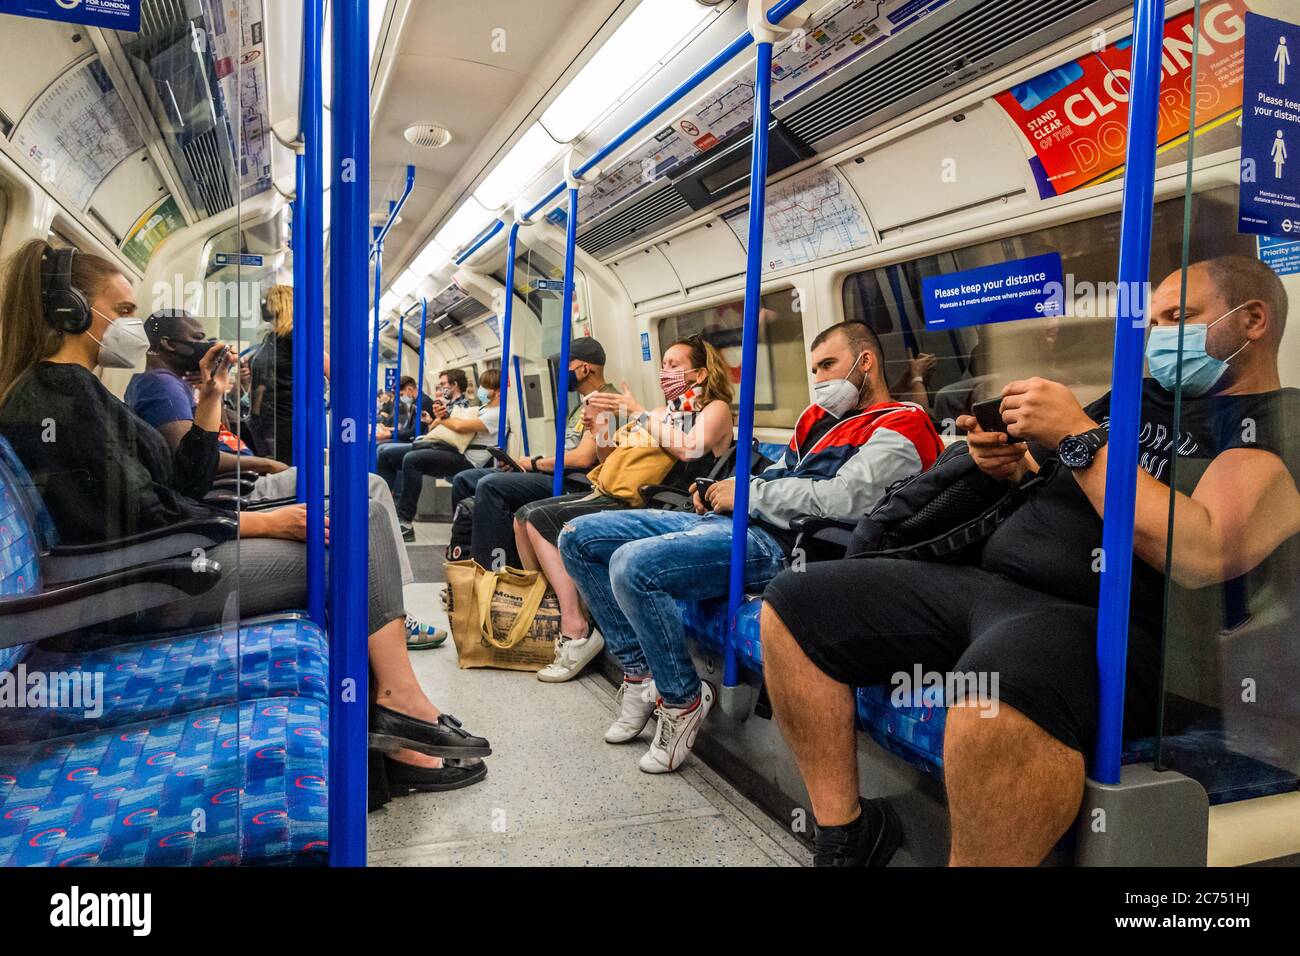 Londres, Reino Unido. 13 de julio de 2020. El número de pasajeros sigue bajando en el metro, pero ahora está aumentando, después de una mayor relajación de la orientación gubernamental. Los que viajan en su mayoría usan máscaras después de que se conviertan en obligatorias en transporte público. El "bloqueo" continúa para el brote de Coronavirus (Covid 19) en Londres. Crédito: Guy Bell/Alamy Live News Foto de stock